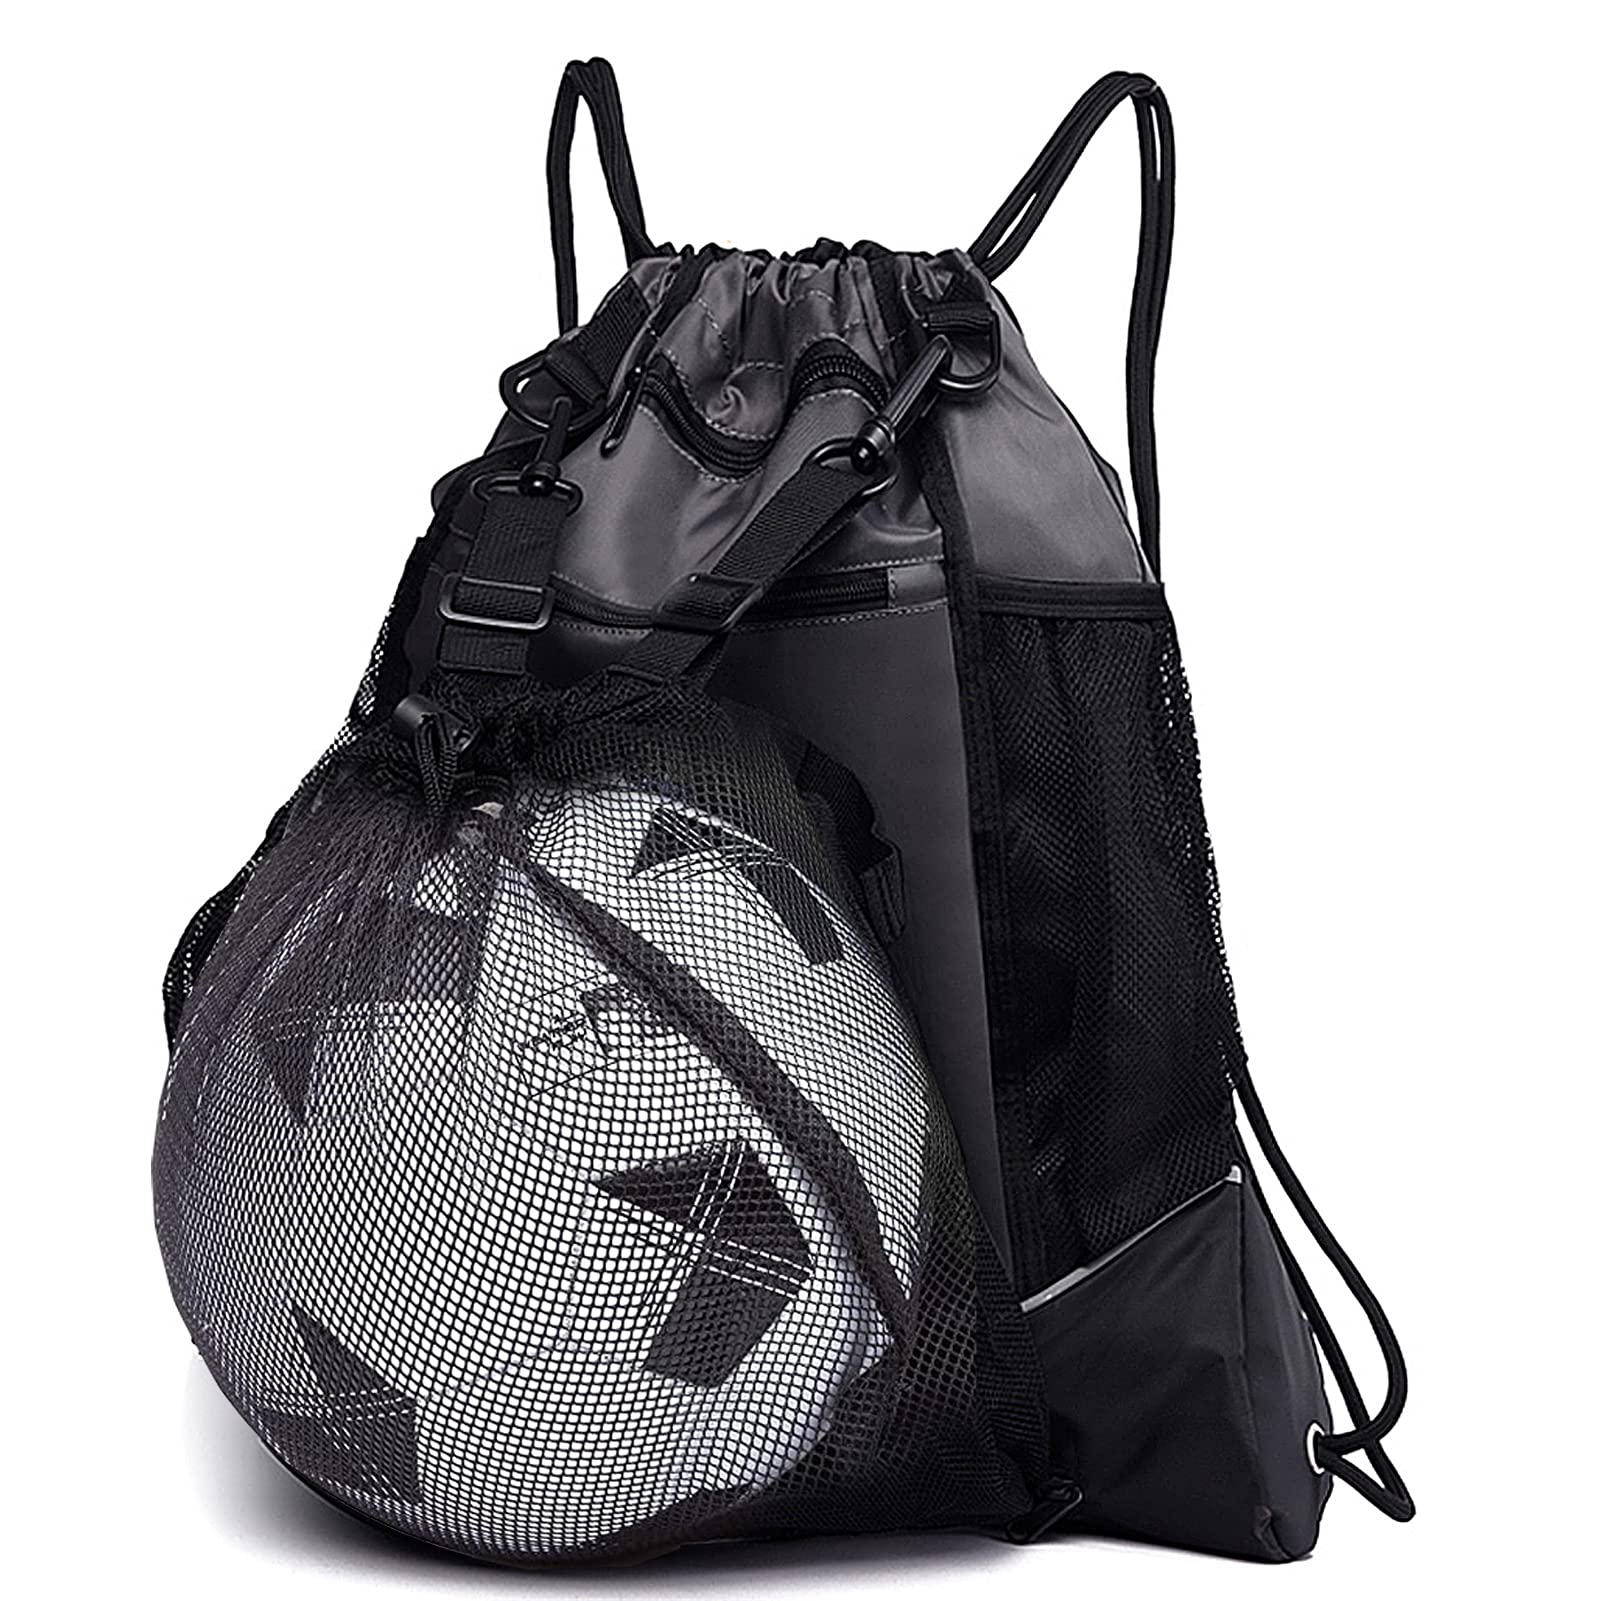 KAEgREEL Drawstring Soccer Bag for Boys, Foldable Basketball Backpack gym Bag Sackpack Sports Sack with Detachable Ball Mesh Bag